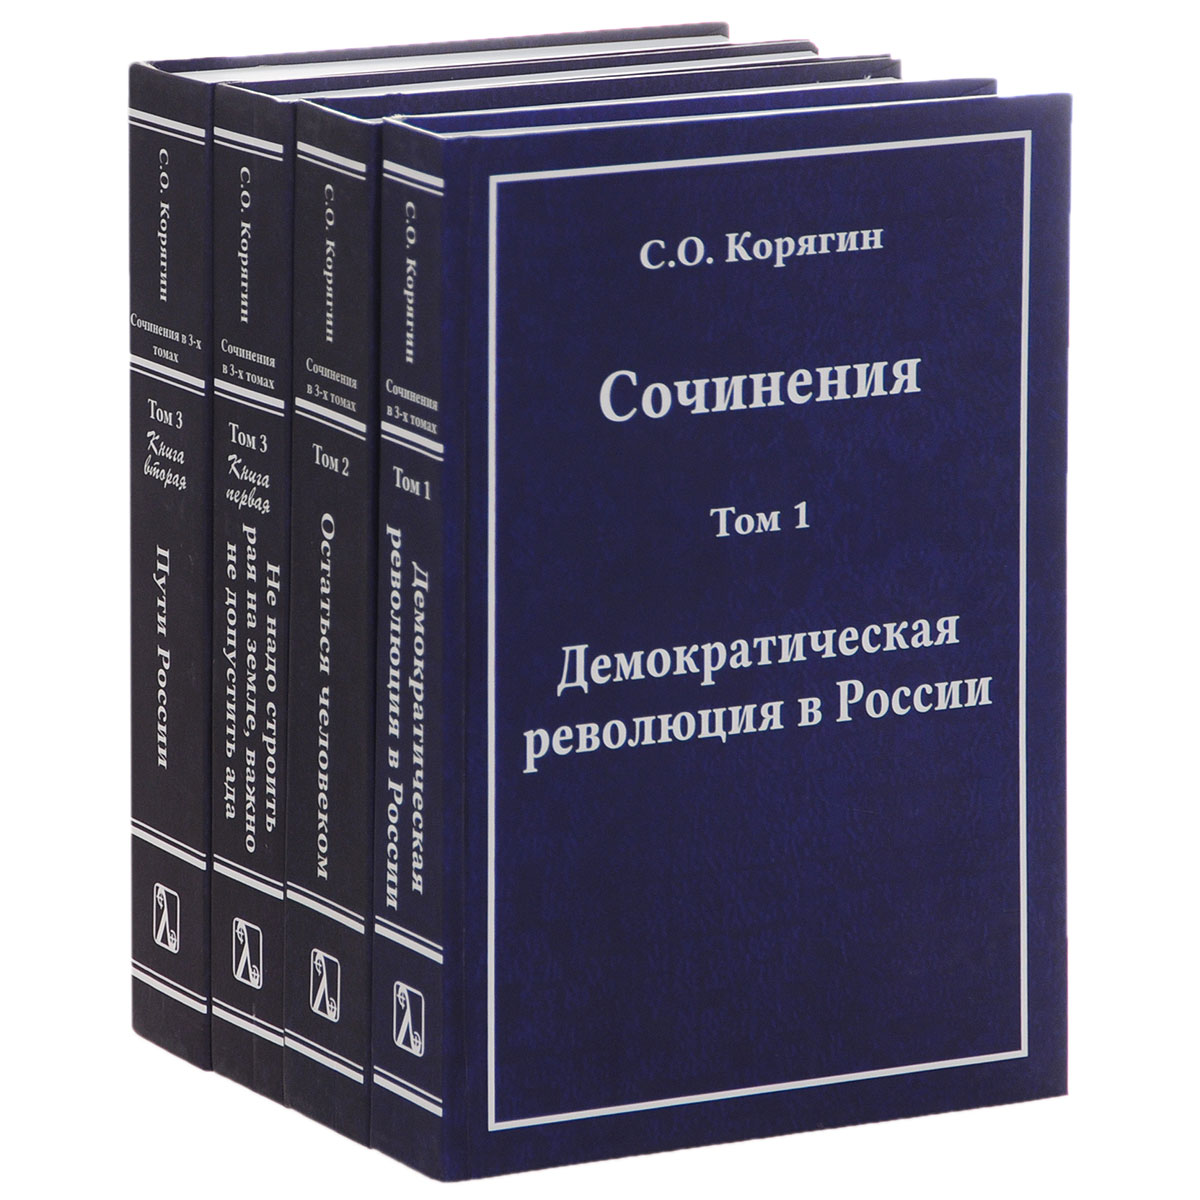 Сочинения С. О. Корягина. В 3 томах (комплект из 4 книг). С. О. Корягин